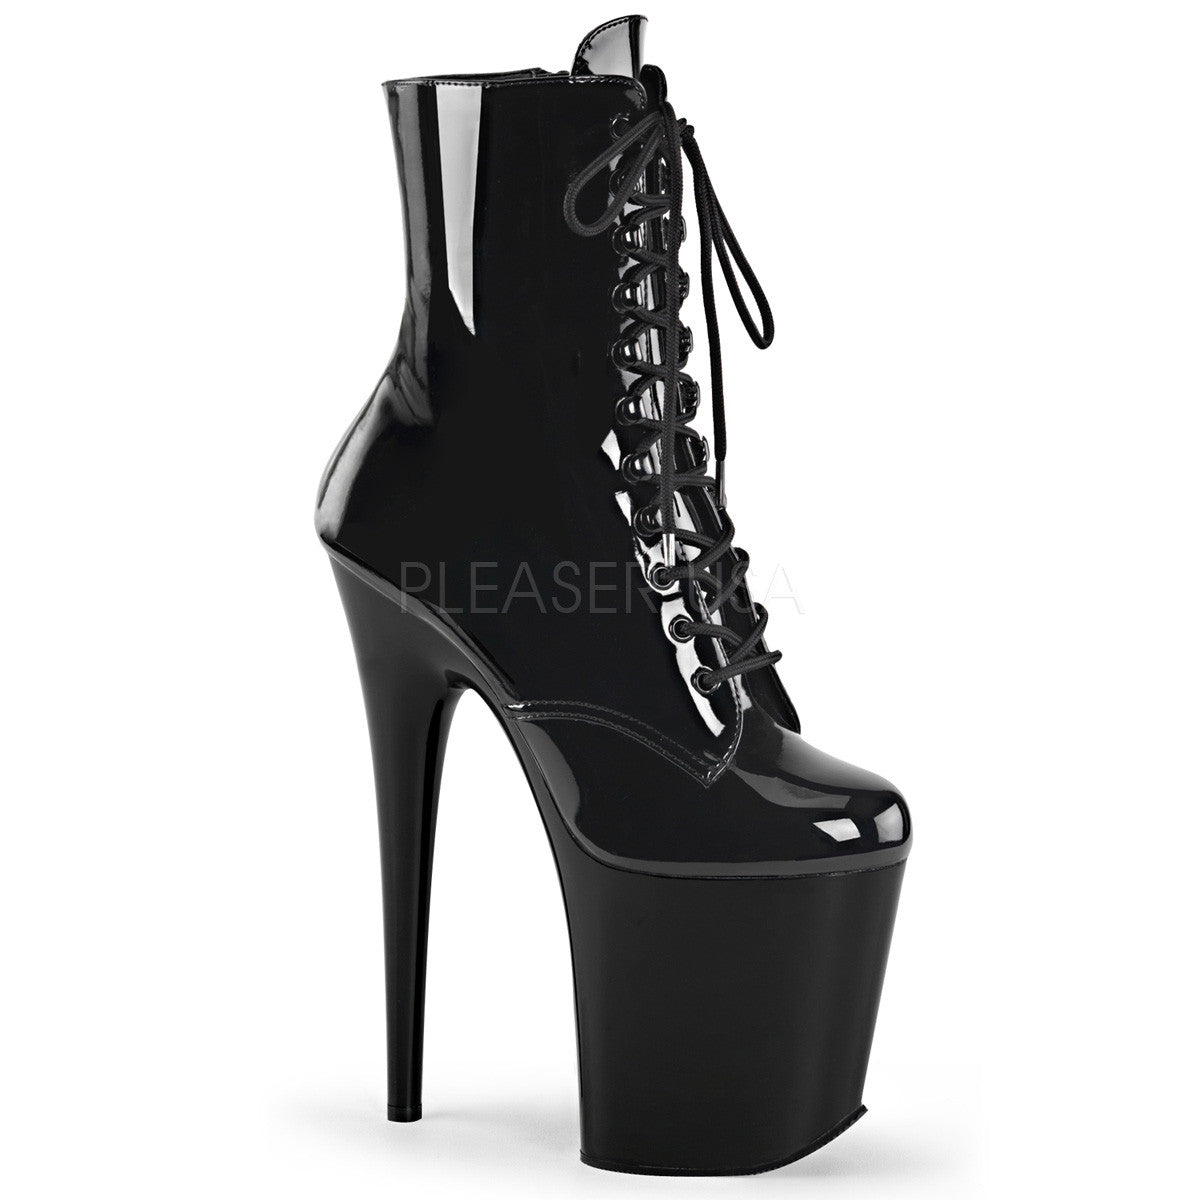 Pleaser FLAMINGO-1020 Black Ankle Boots - Shoecup.com - 1